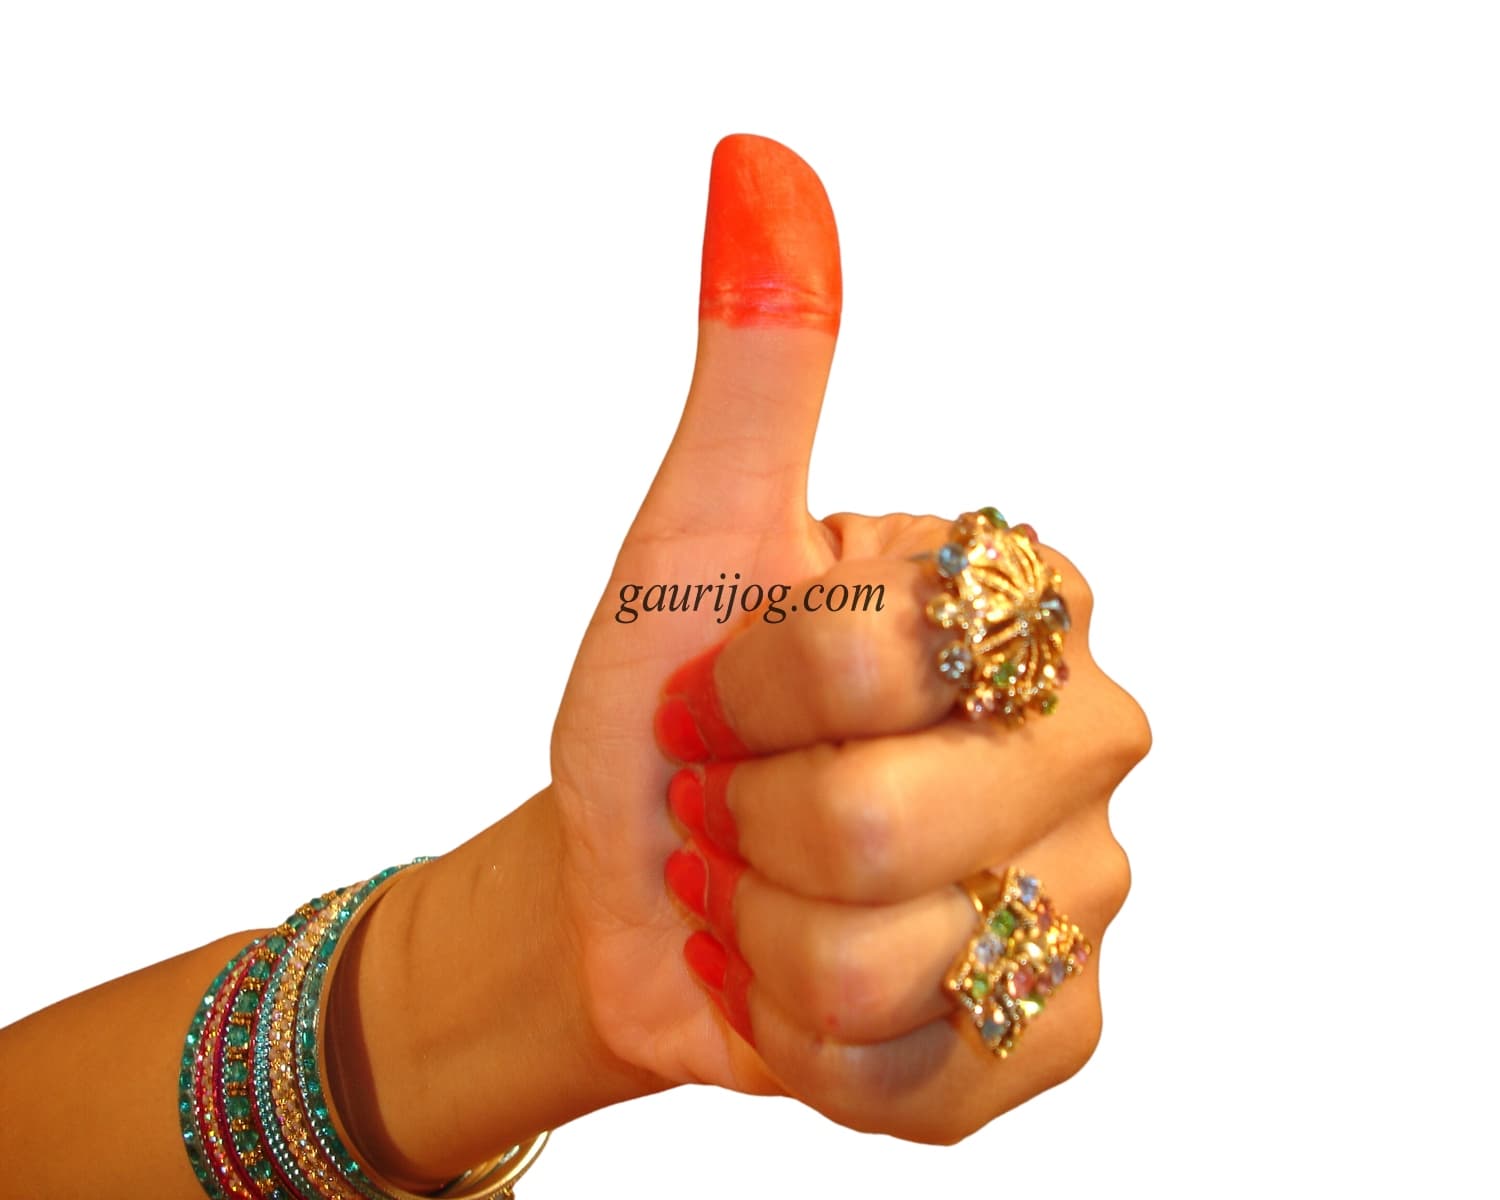 Shikhar Hand Gesture by Gauri Jog